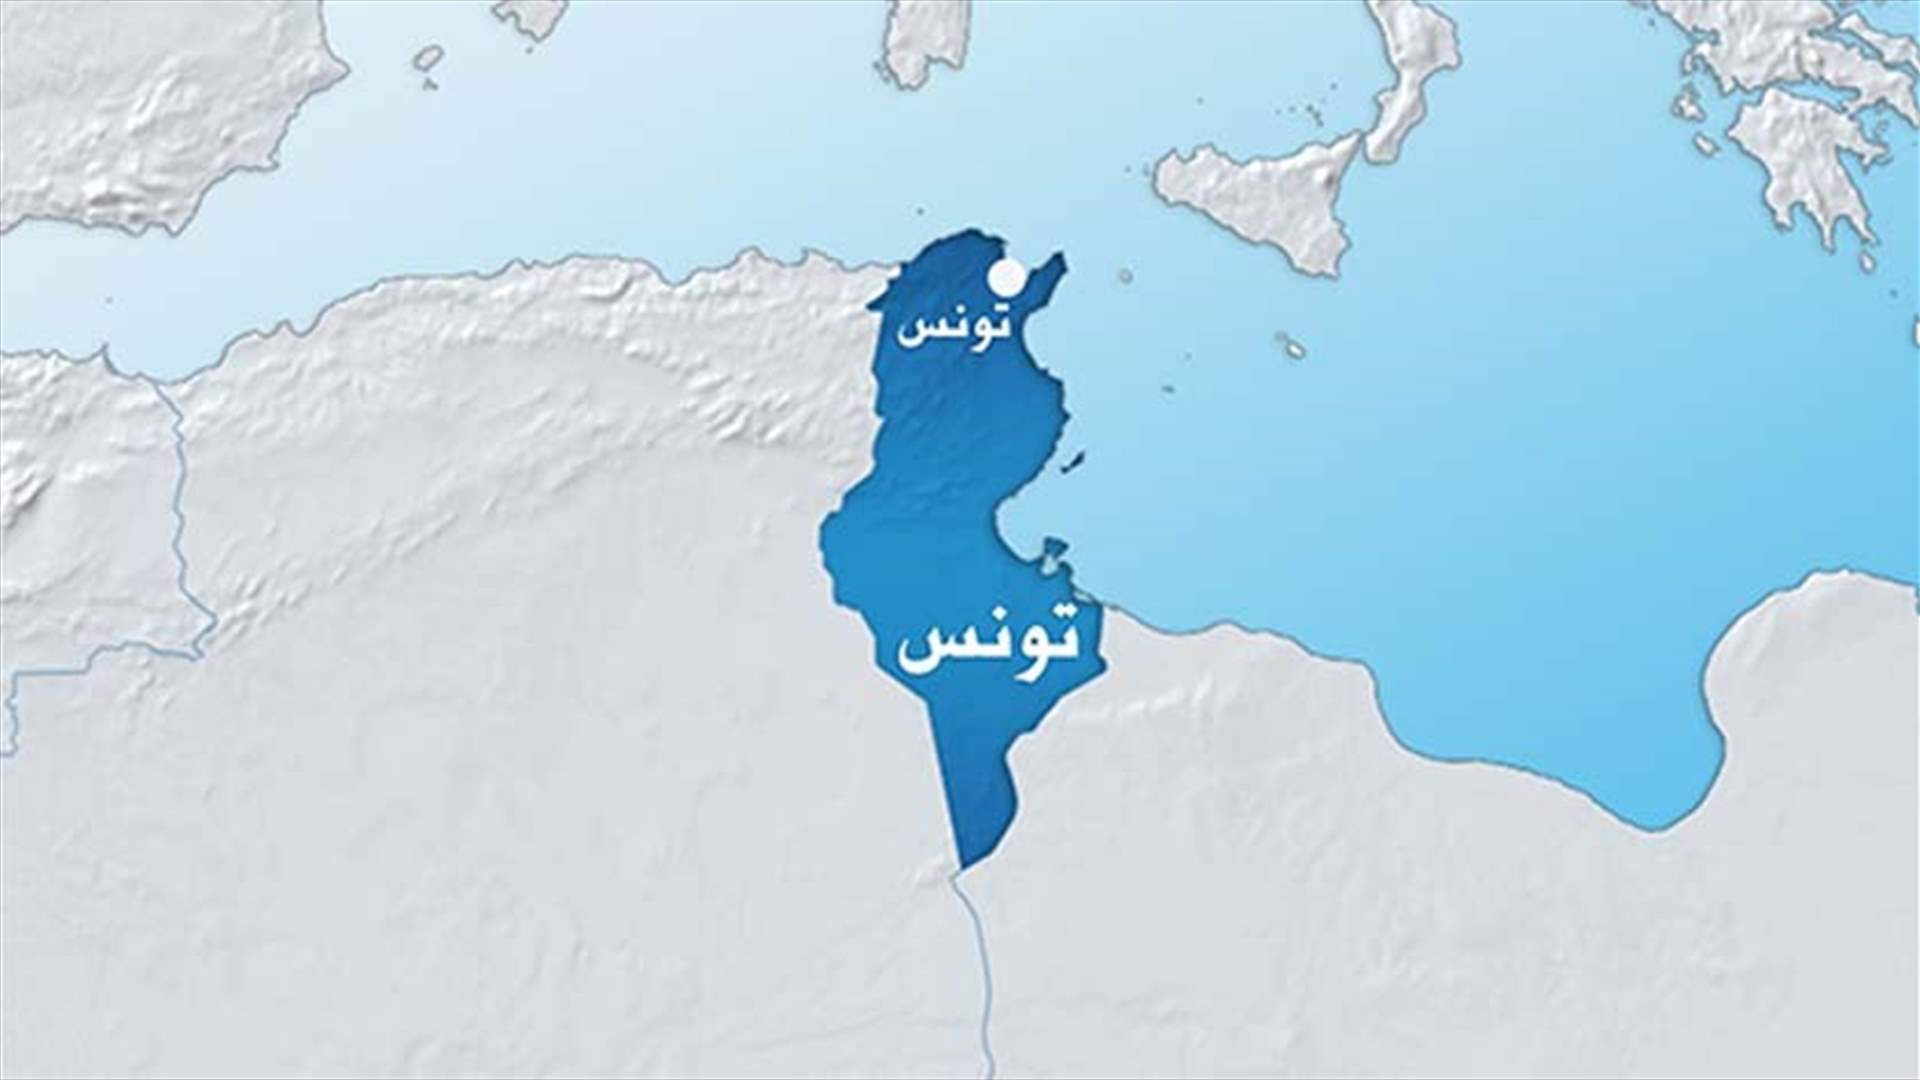 16 قتيلا و85 جريحا في حادث سير وسط غربي تونس